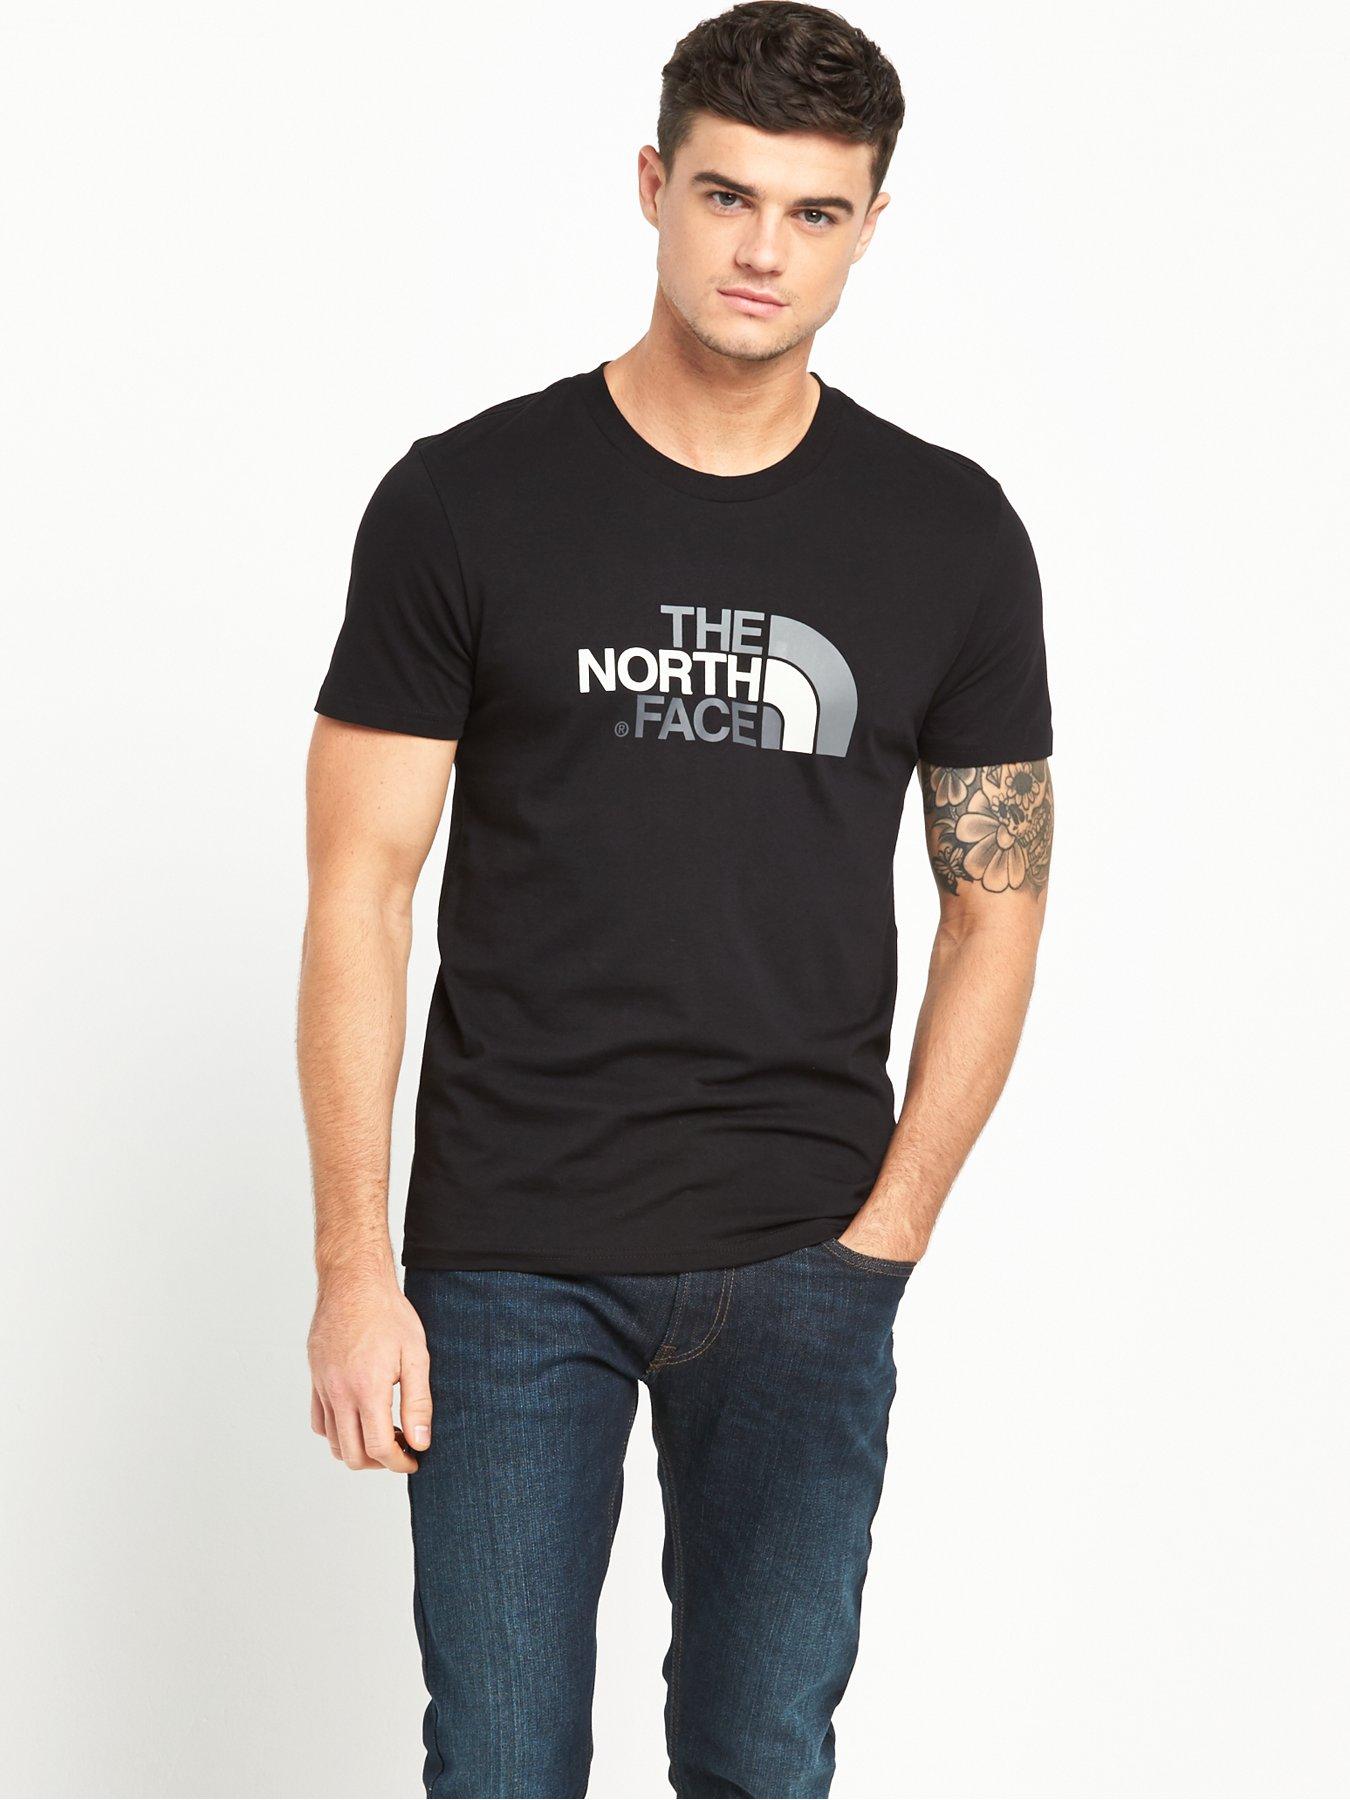 grey north face t shirt